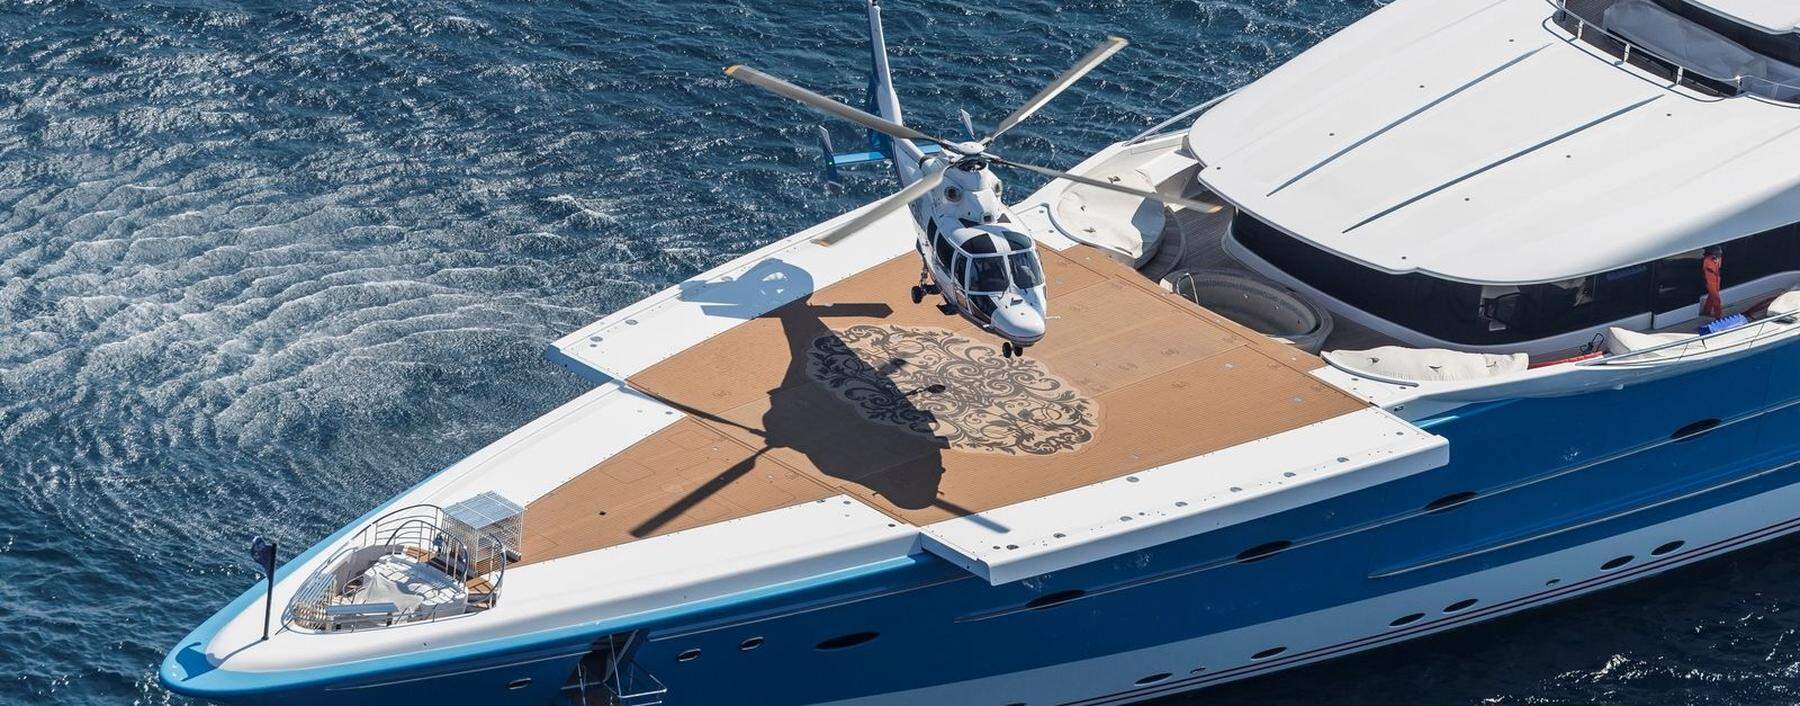 Ausfahrbares Heli-Pad: Auf einer Gigajacht, die auf sich hält, können zwei Helikopter parken.